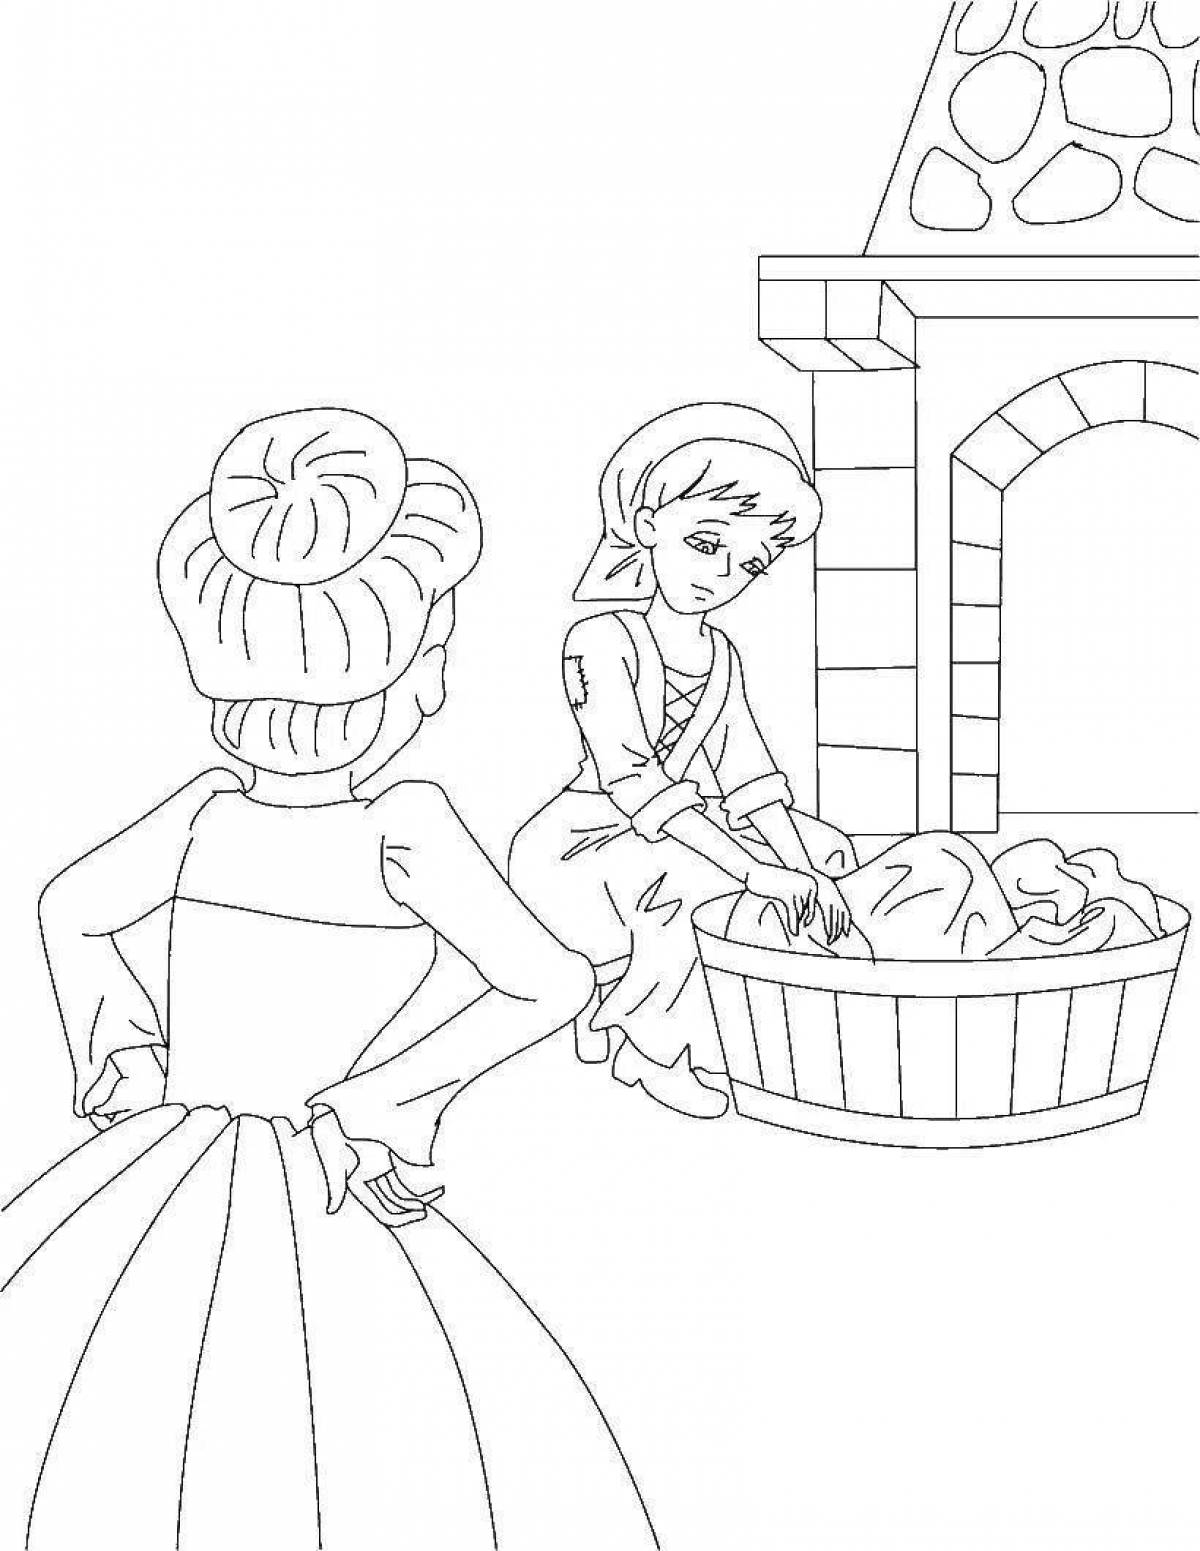 Elegant Cinderella and Charles Perrault coloring book